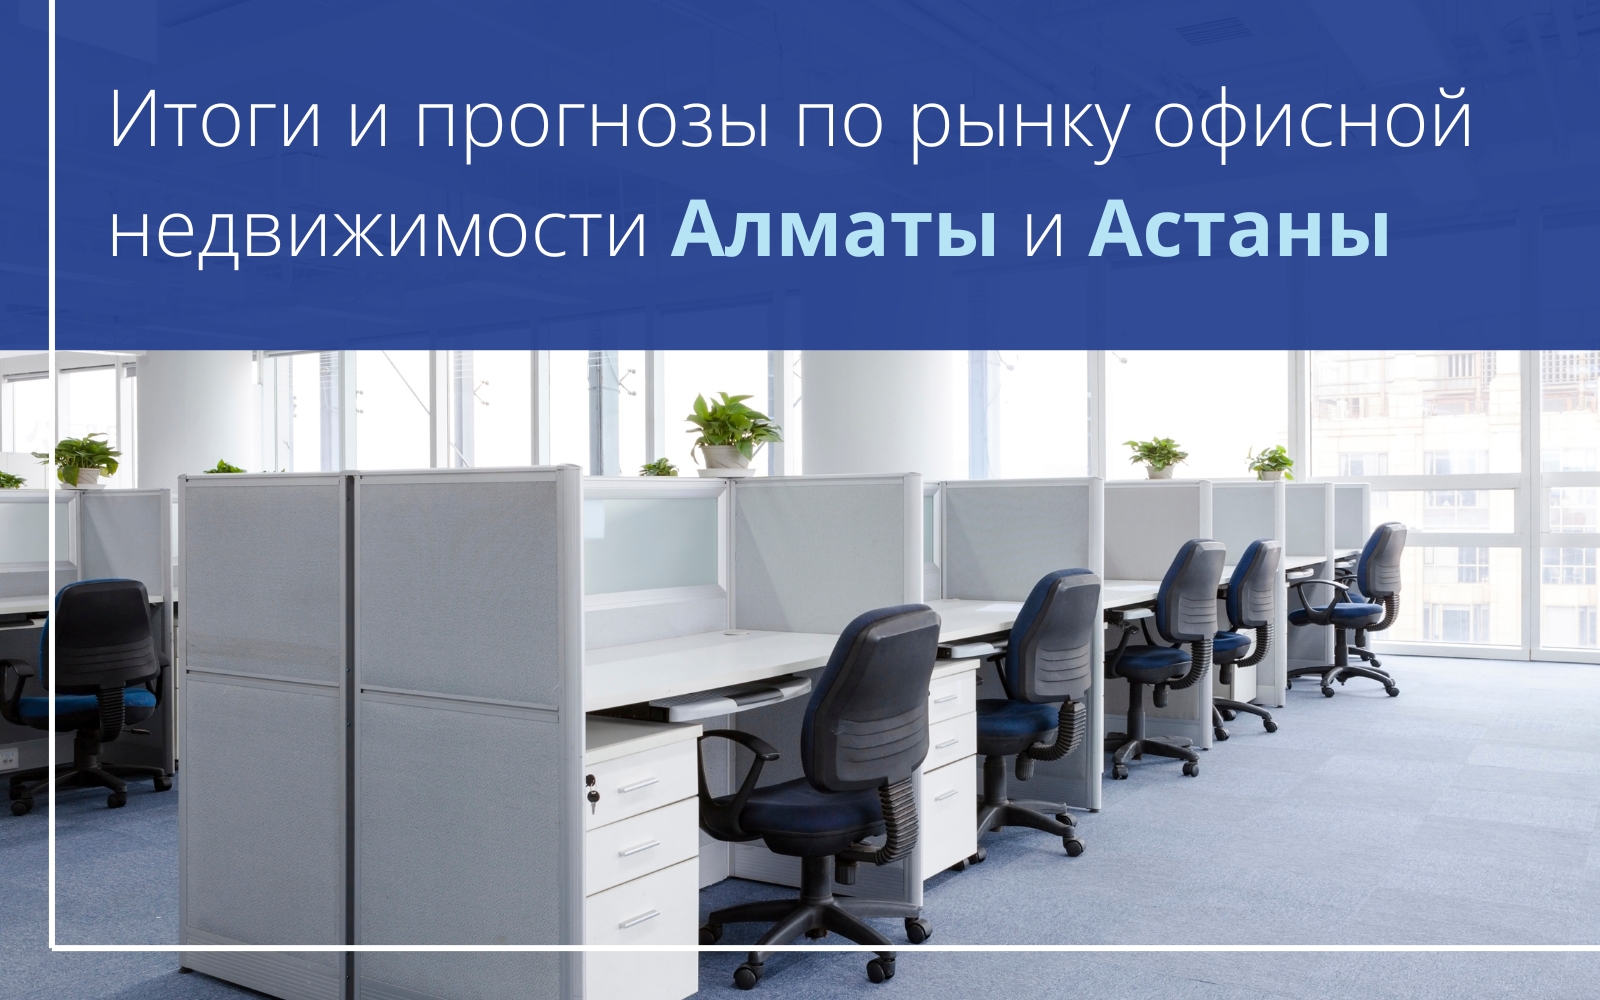 Итоги и прогнозы по рынку офисной недвижимости Алматы и Астаны